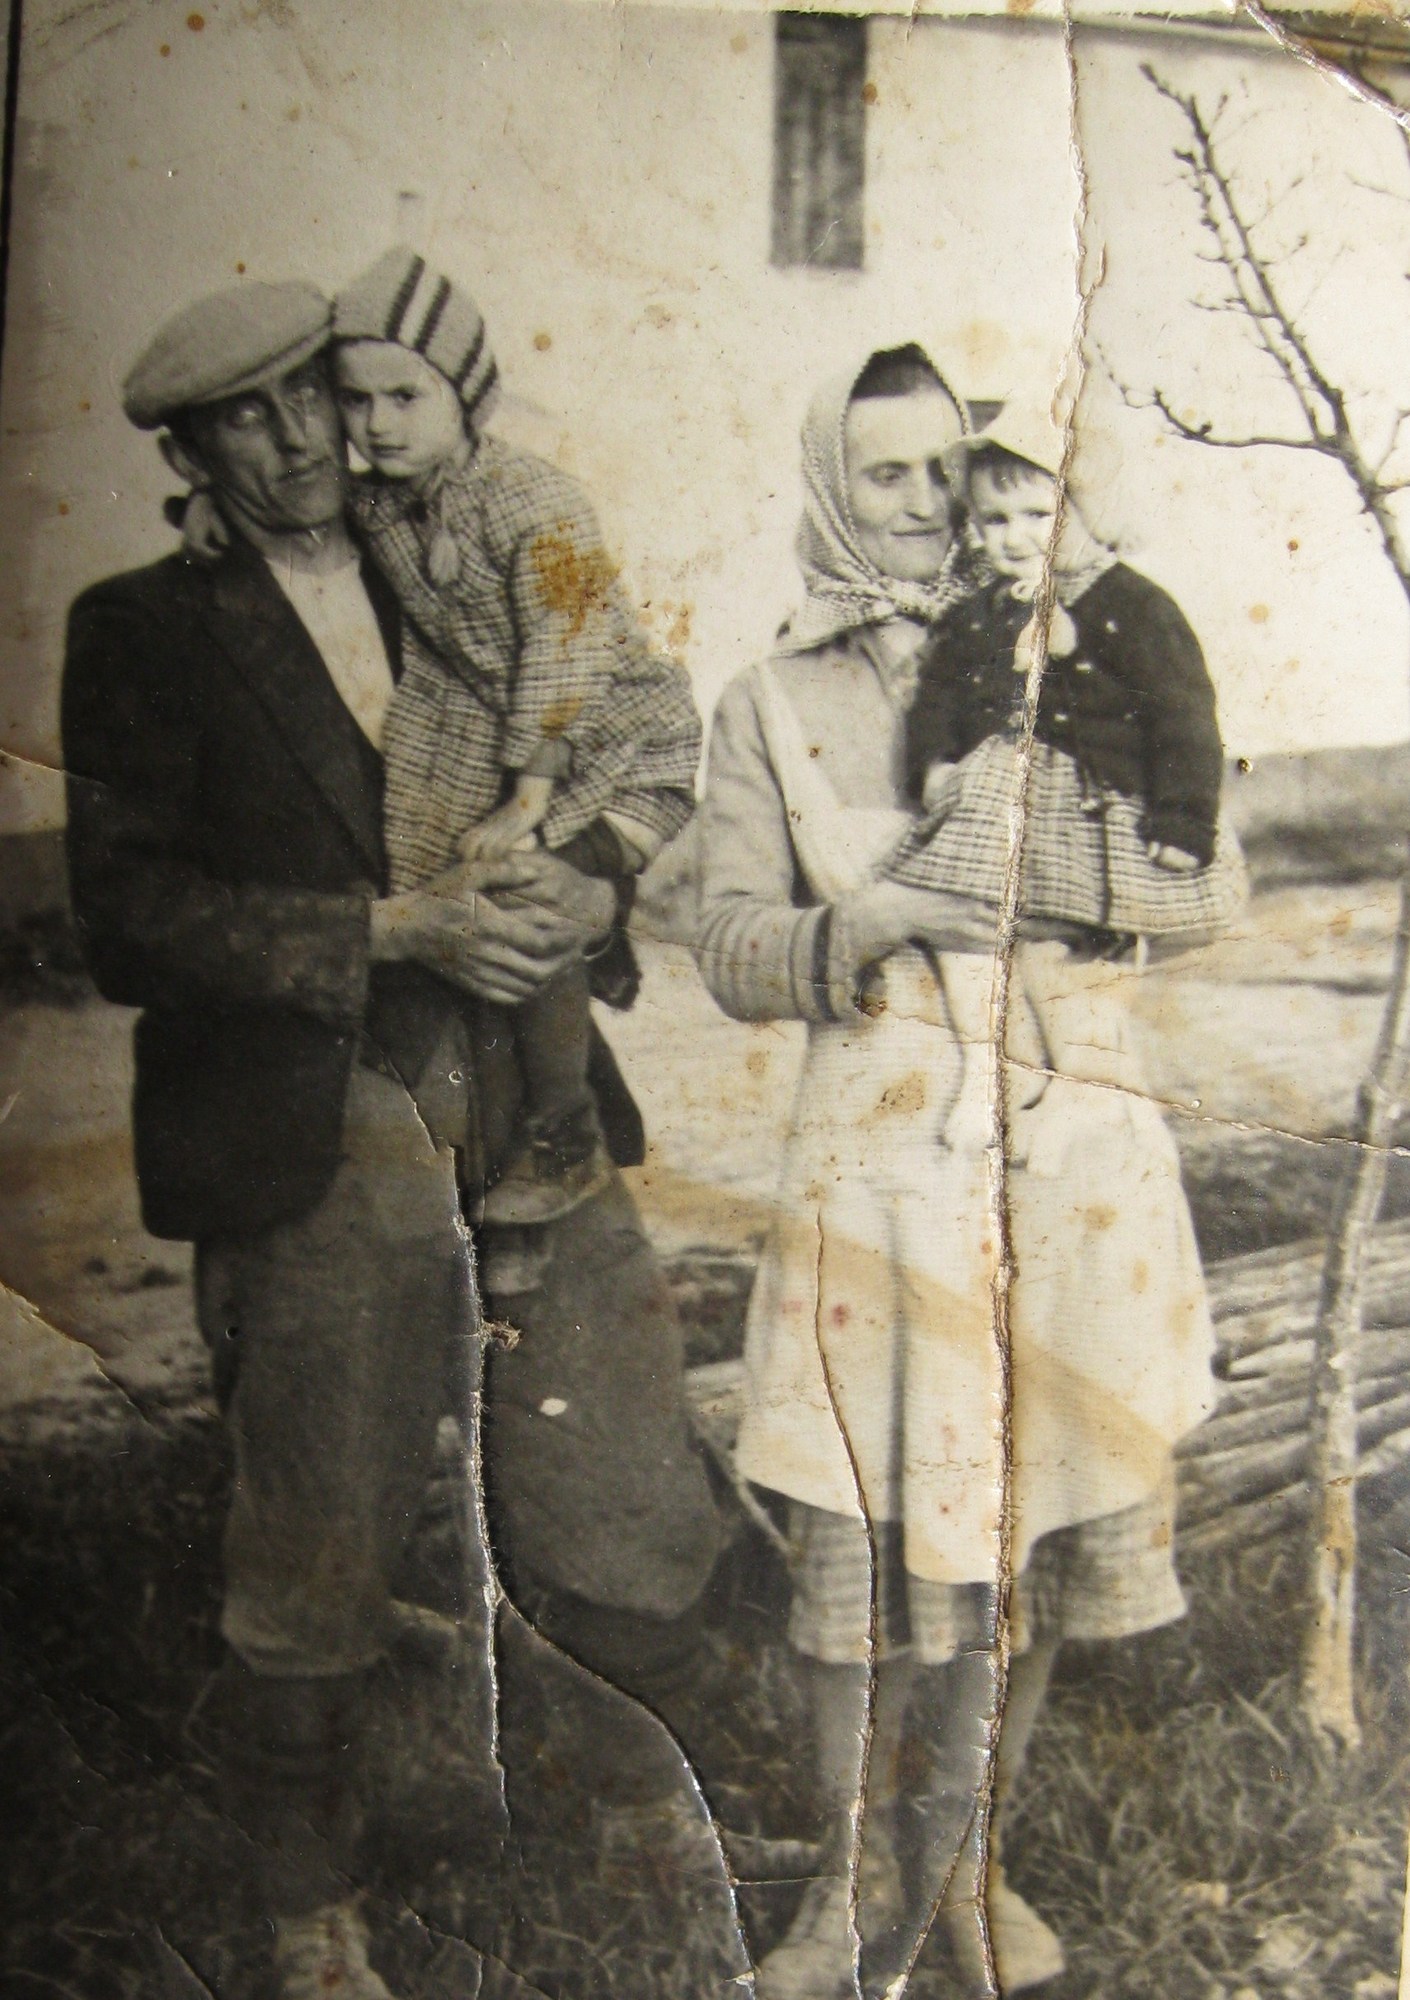 Rodina Oherová před tragédii v roce 1941 v Zákřově (otec Oldřich s dcerou Ludmilou a matka Marie s dcerou Zdeňkou)